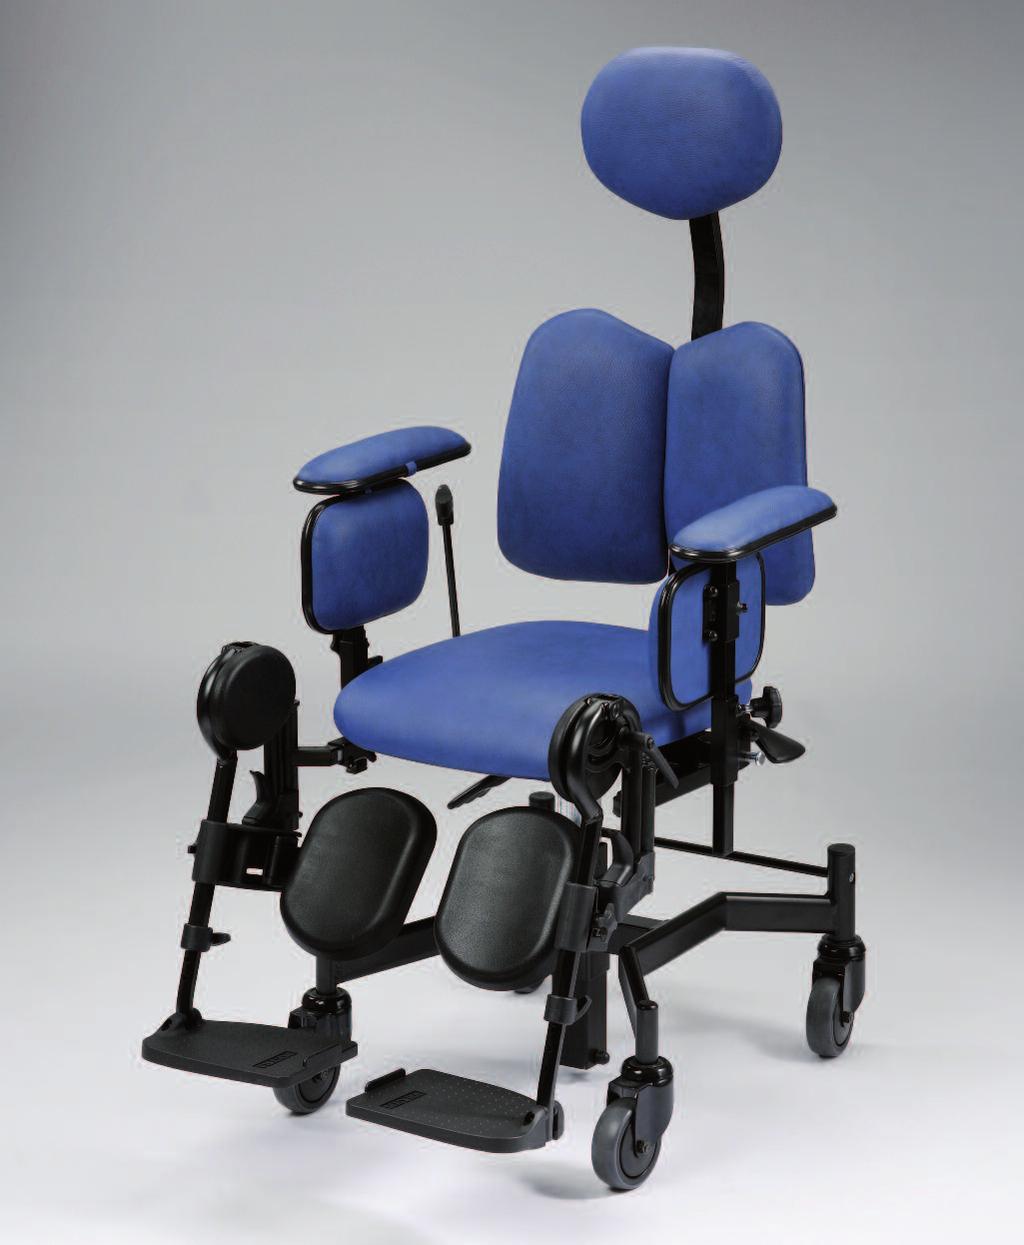 POLOHOVACÍ ZAŘÍZENÍ 1.100 MATRIX Polohovací sedačka MATRIX podporuje aktivní a zároveň ergonomické sezení vhodné pro rehabilitaci a pracovní uplatnění osob s pohybovým postižením.